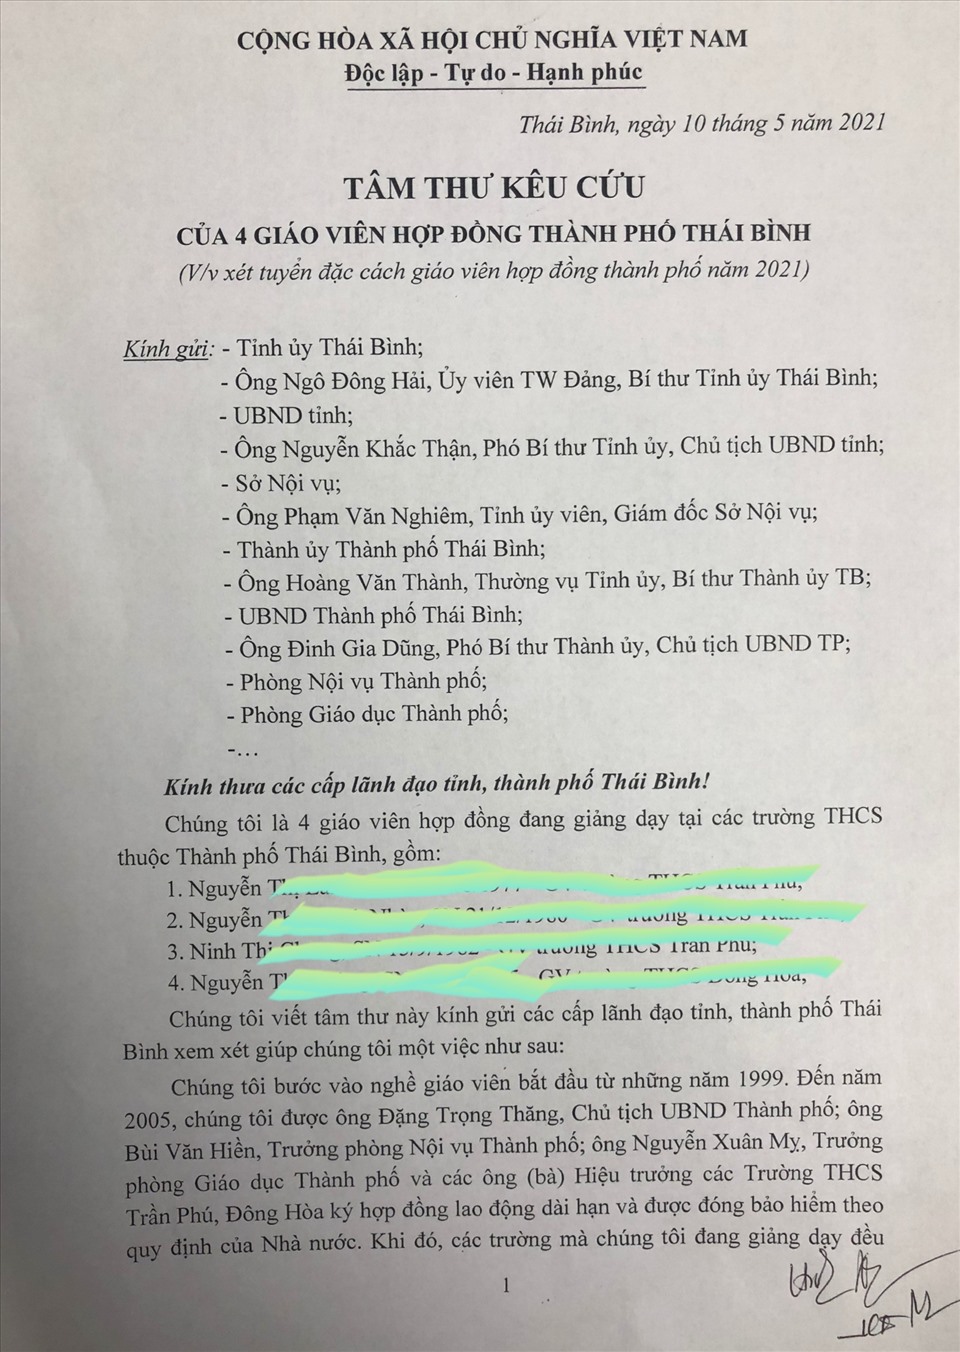 Tâm thư kêu cứu của các cô giáo gửi các cơ quan chức năng tại tỉnh Thái Bình. Ảnh: NVCC.